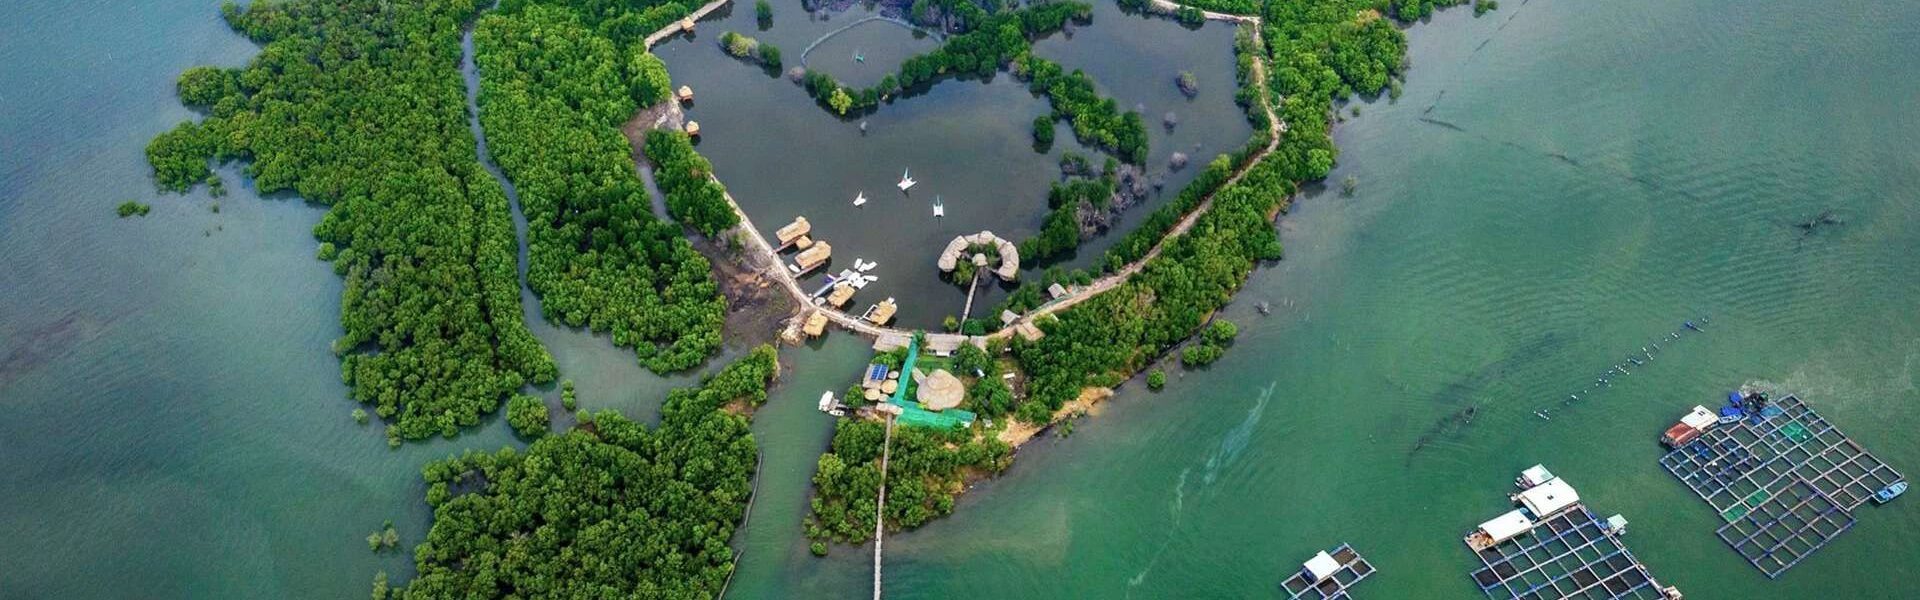 Đảo Gò Găng – Thiên đường sống ảo mới toanh tại Vũng Tàu - Ảnh đại diện